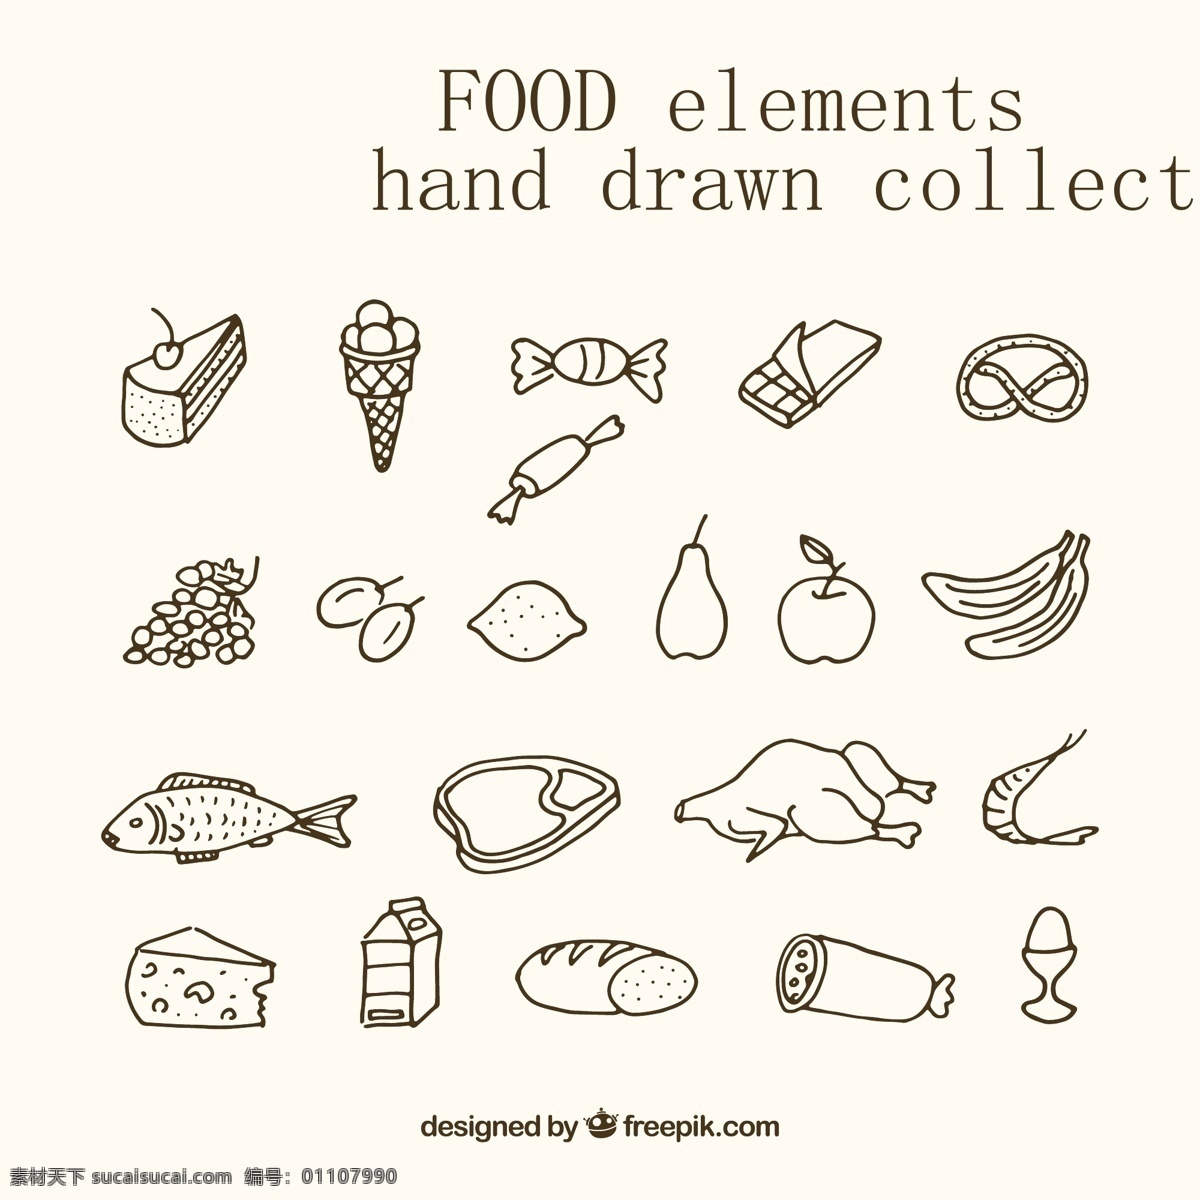 手绘食物 食物素材 食物插画 插画 手绘 矢量图 餐饮矢量素材